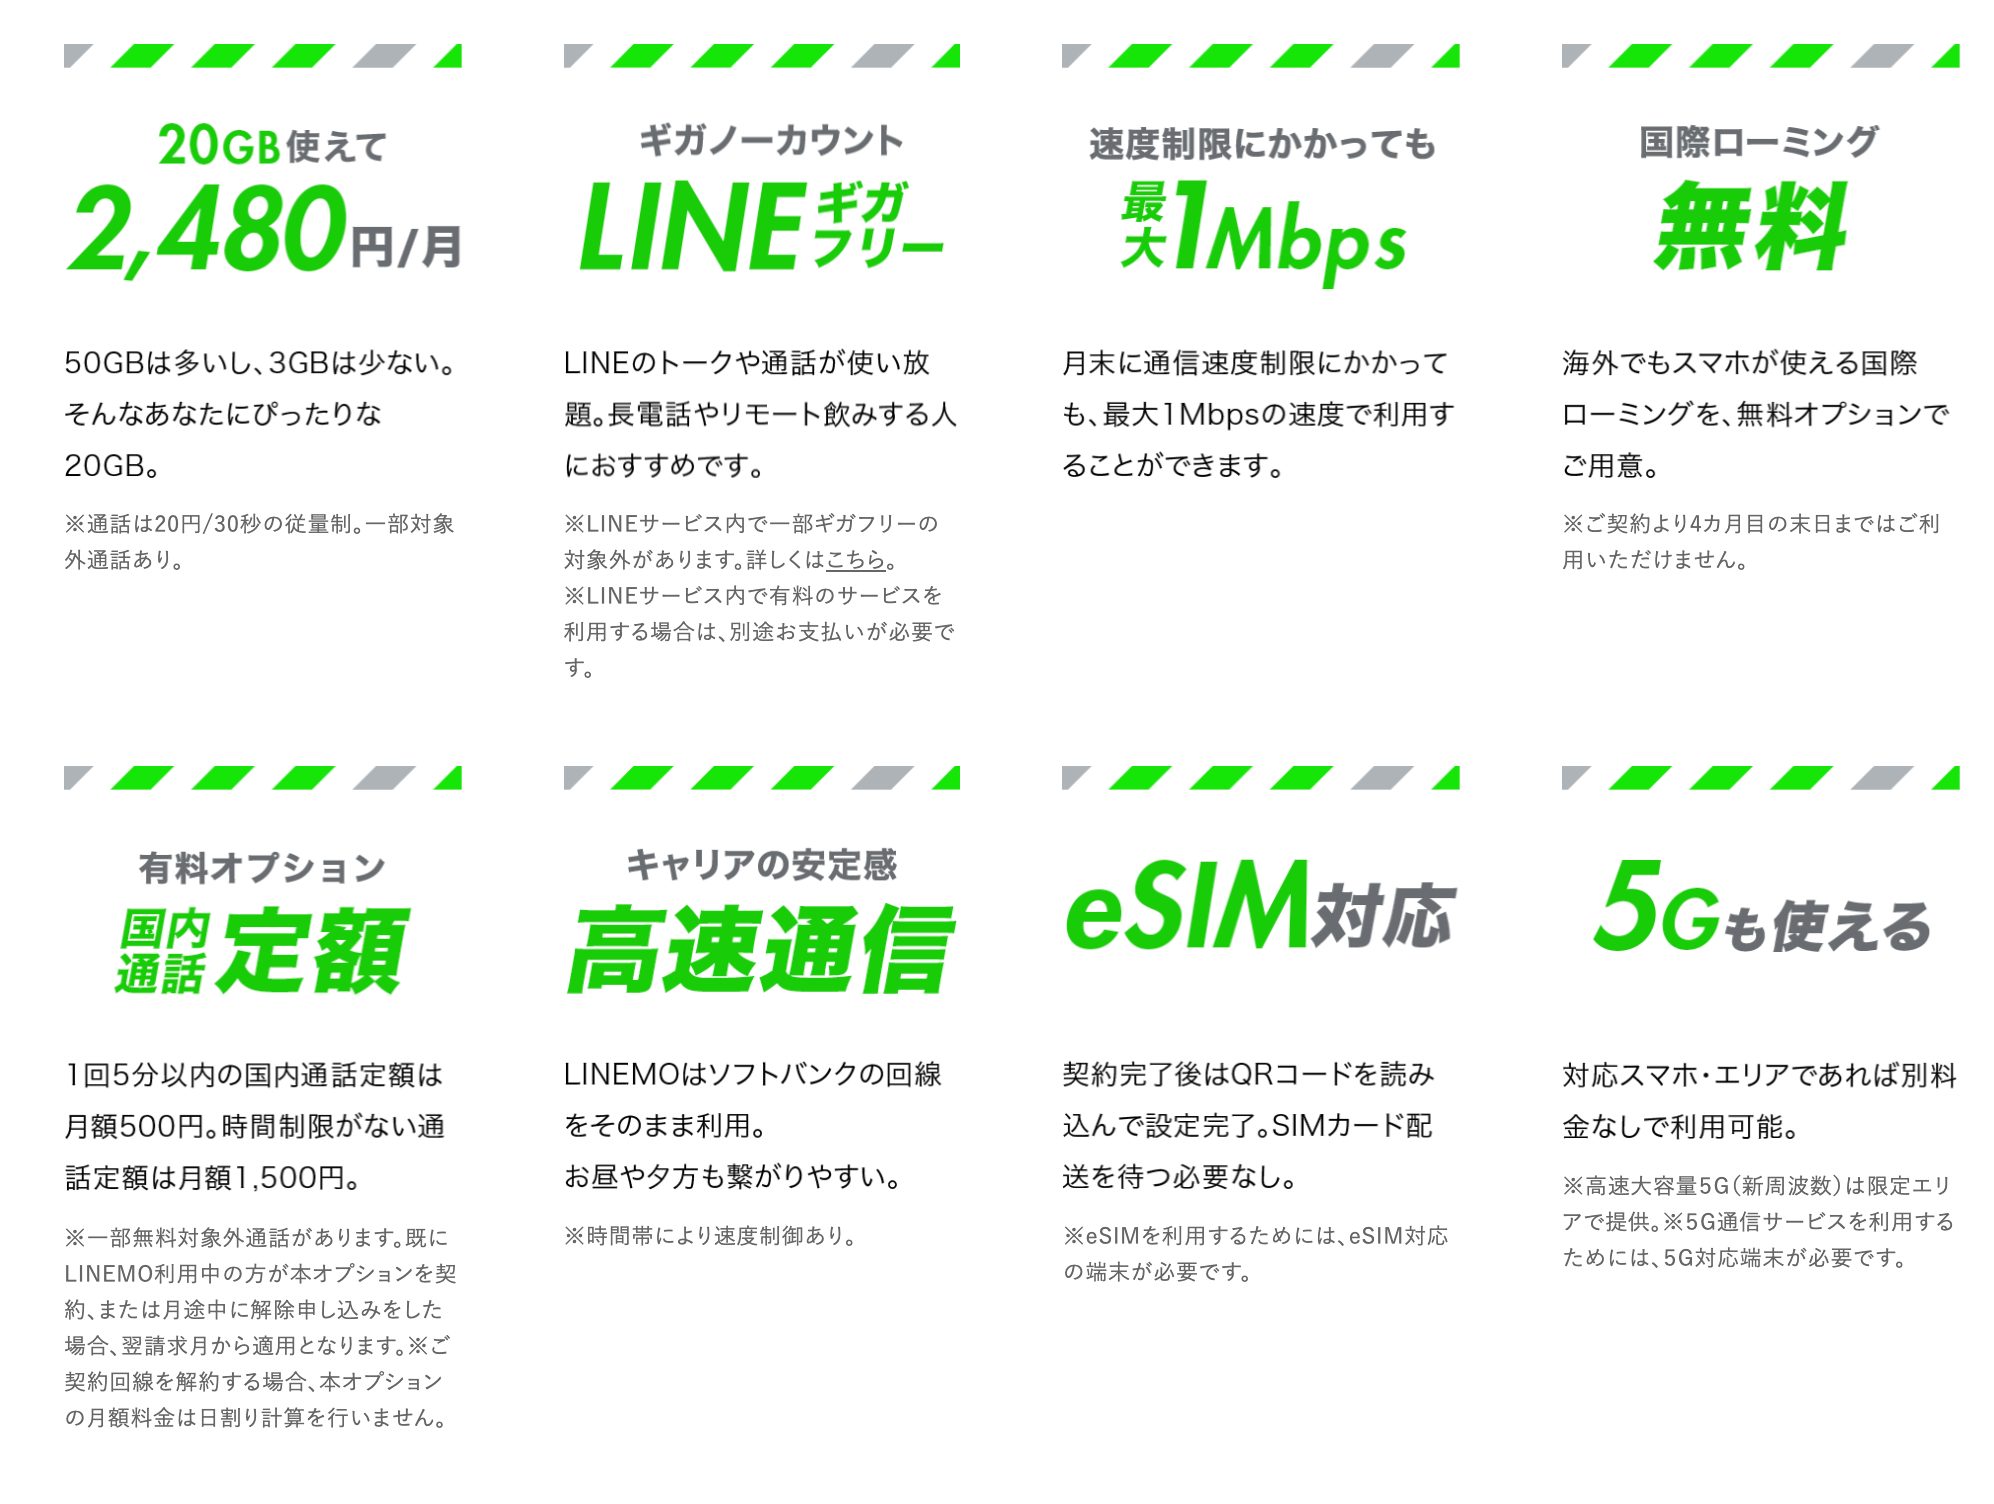 【必見】LINEMOは月額990円のミニプランでも防犯カメラとして利用できる格安SIM linemo-info-all